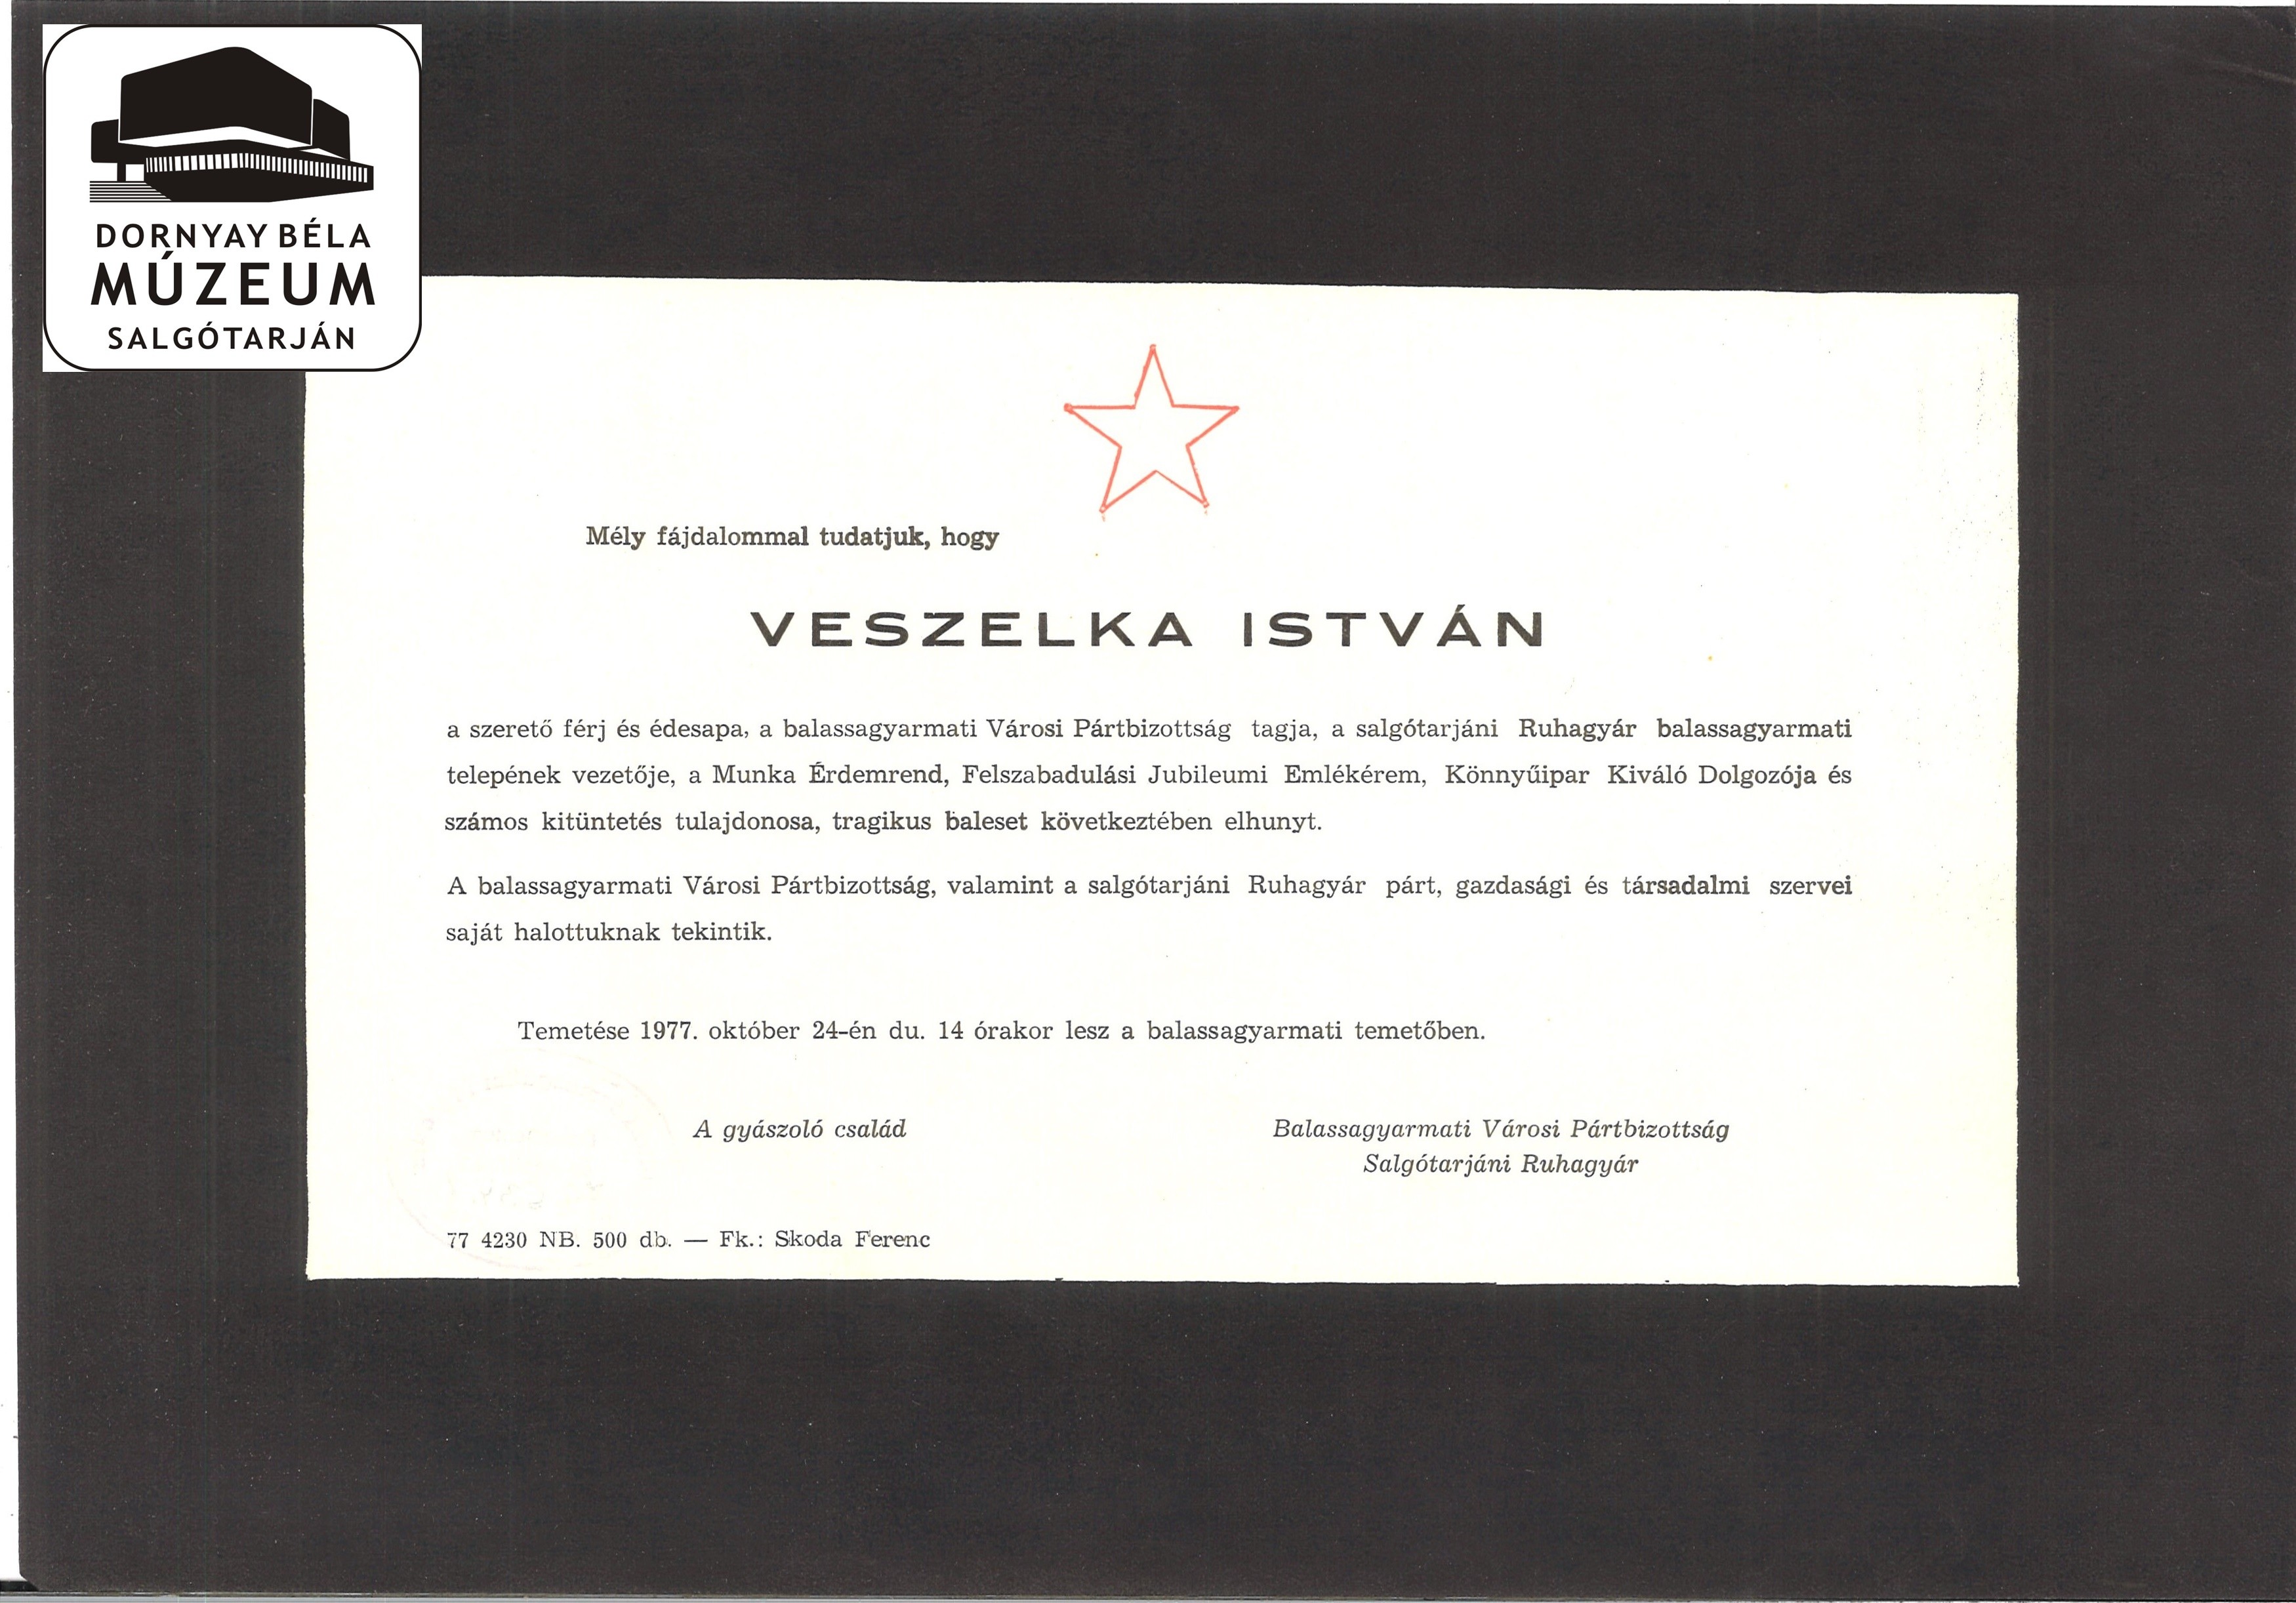 Veszelka István gyászjelentése (Dornyay Béla Múzeum, Salgótarján CC BY-NC-SA)